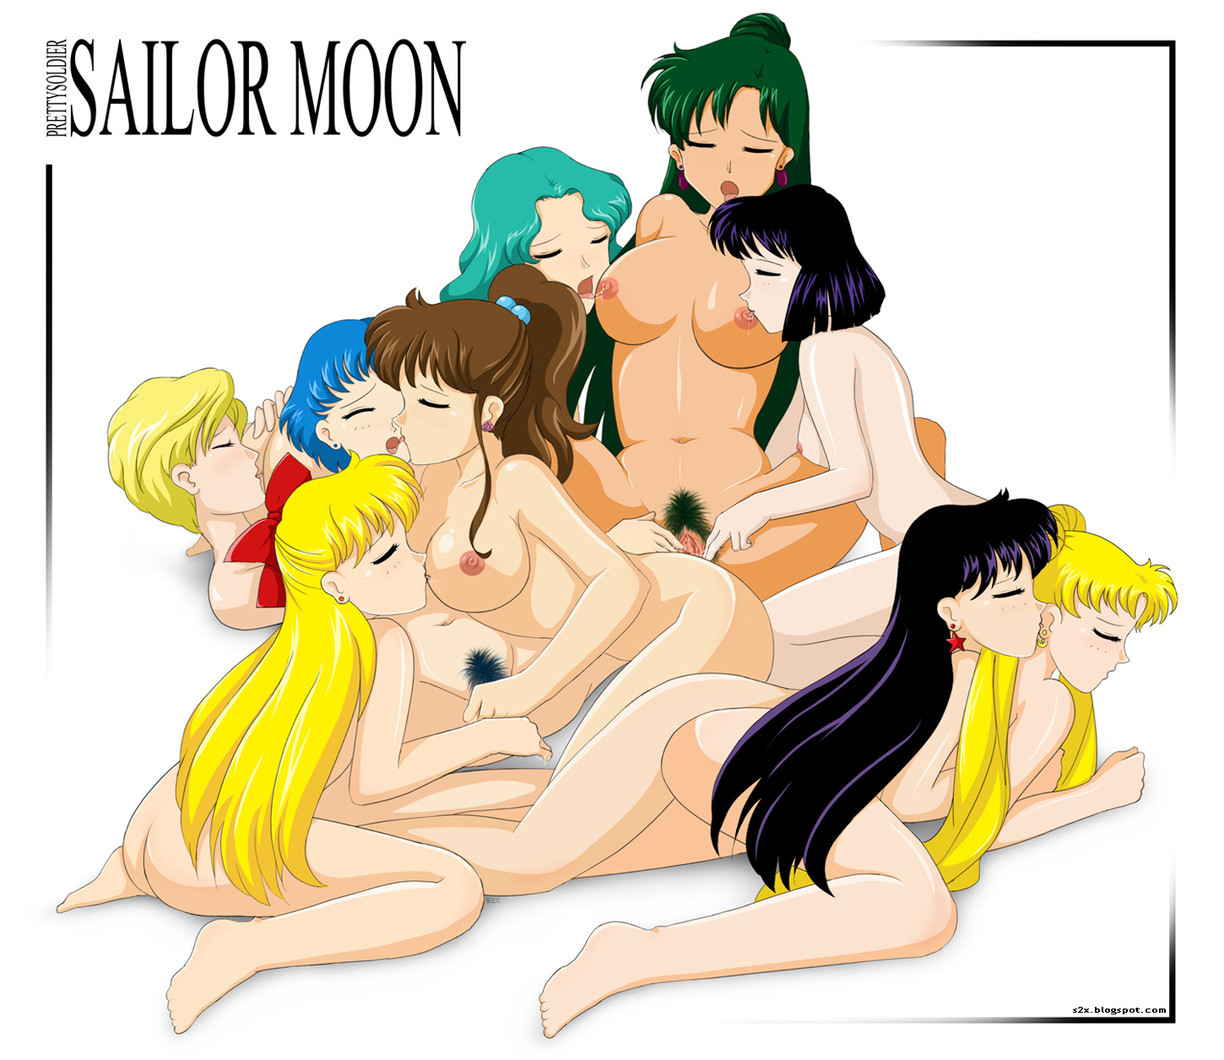 Sailor chibi moon nude